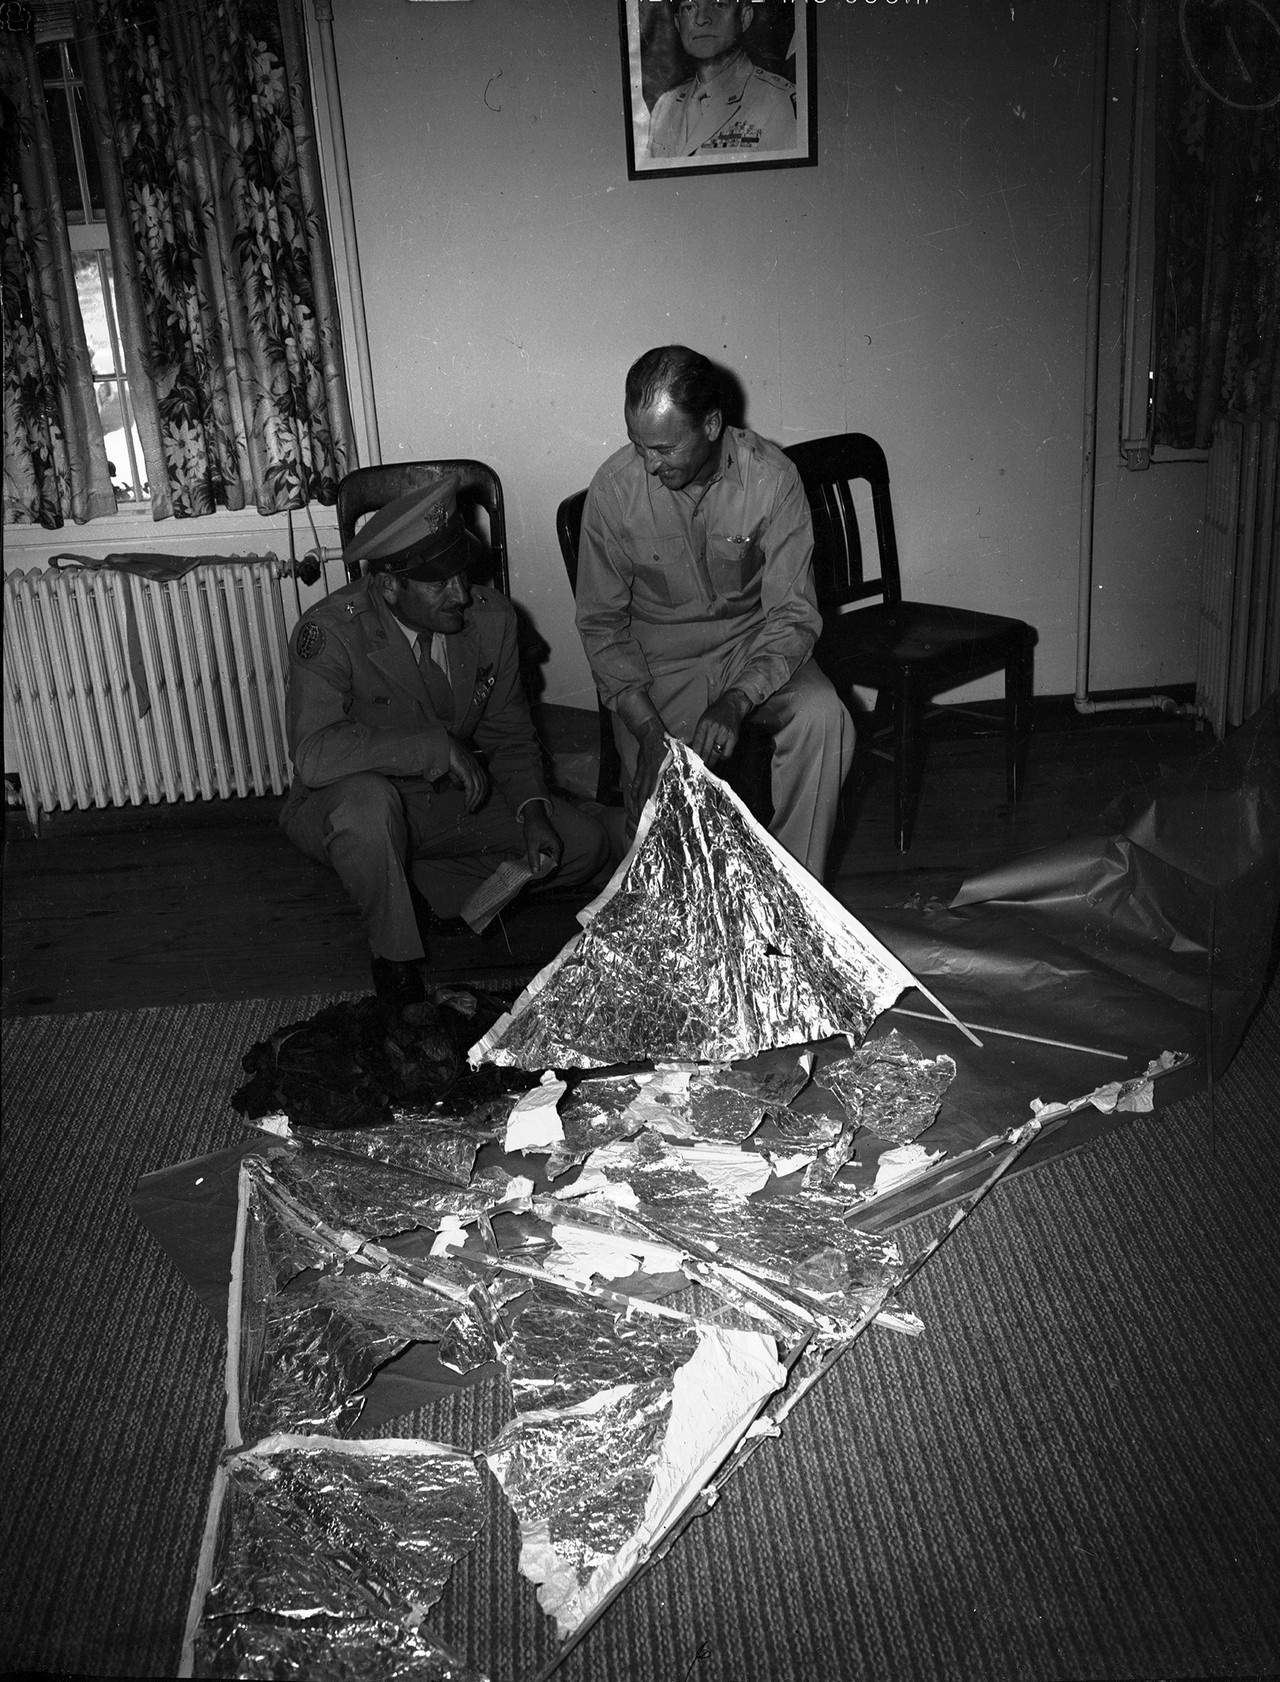 Военнослужащие США изучают остатки разведывательного зонда, обнаруженного в Розуэлле, 1947 г.